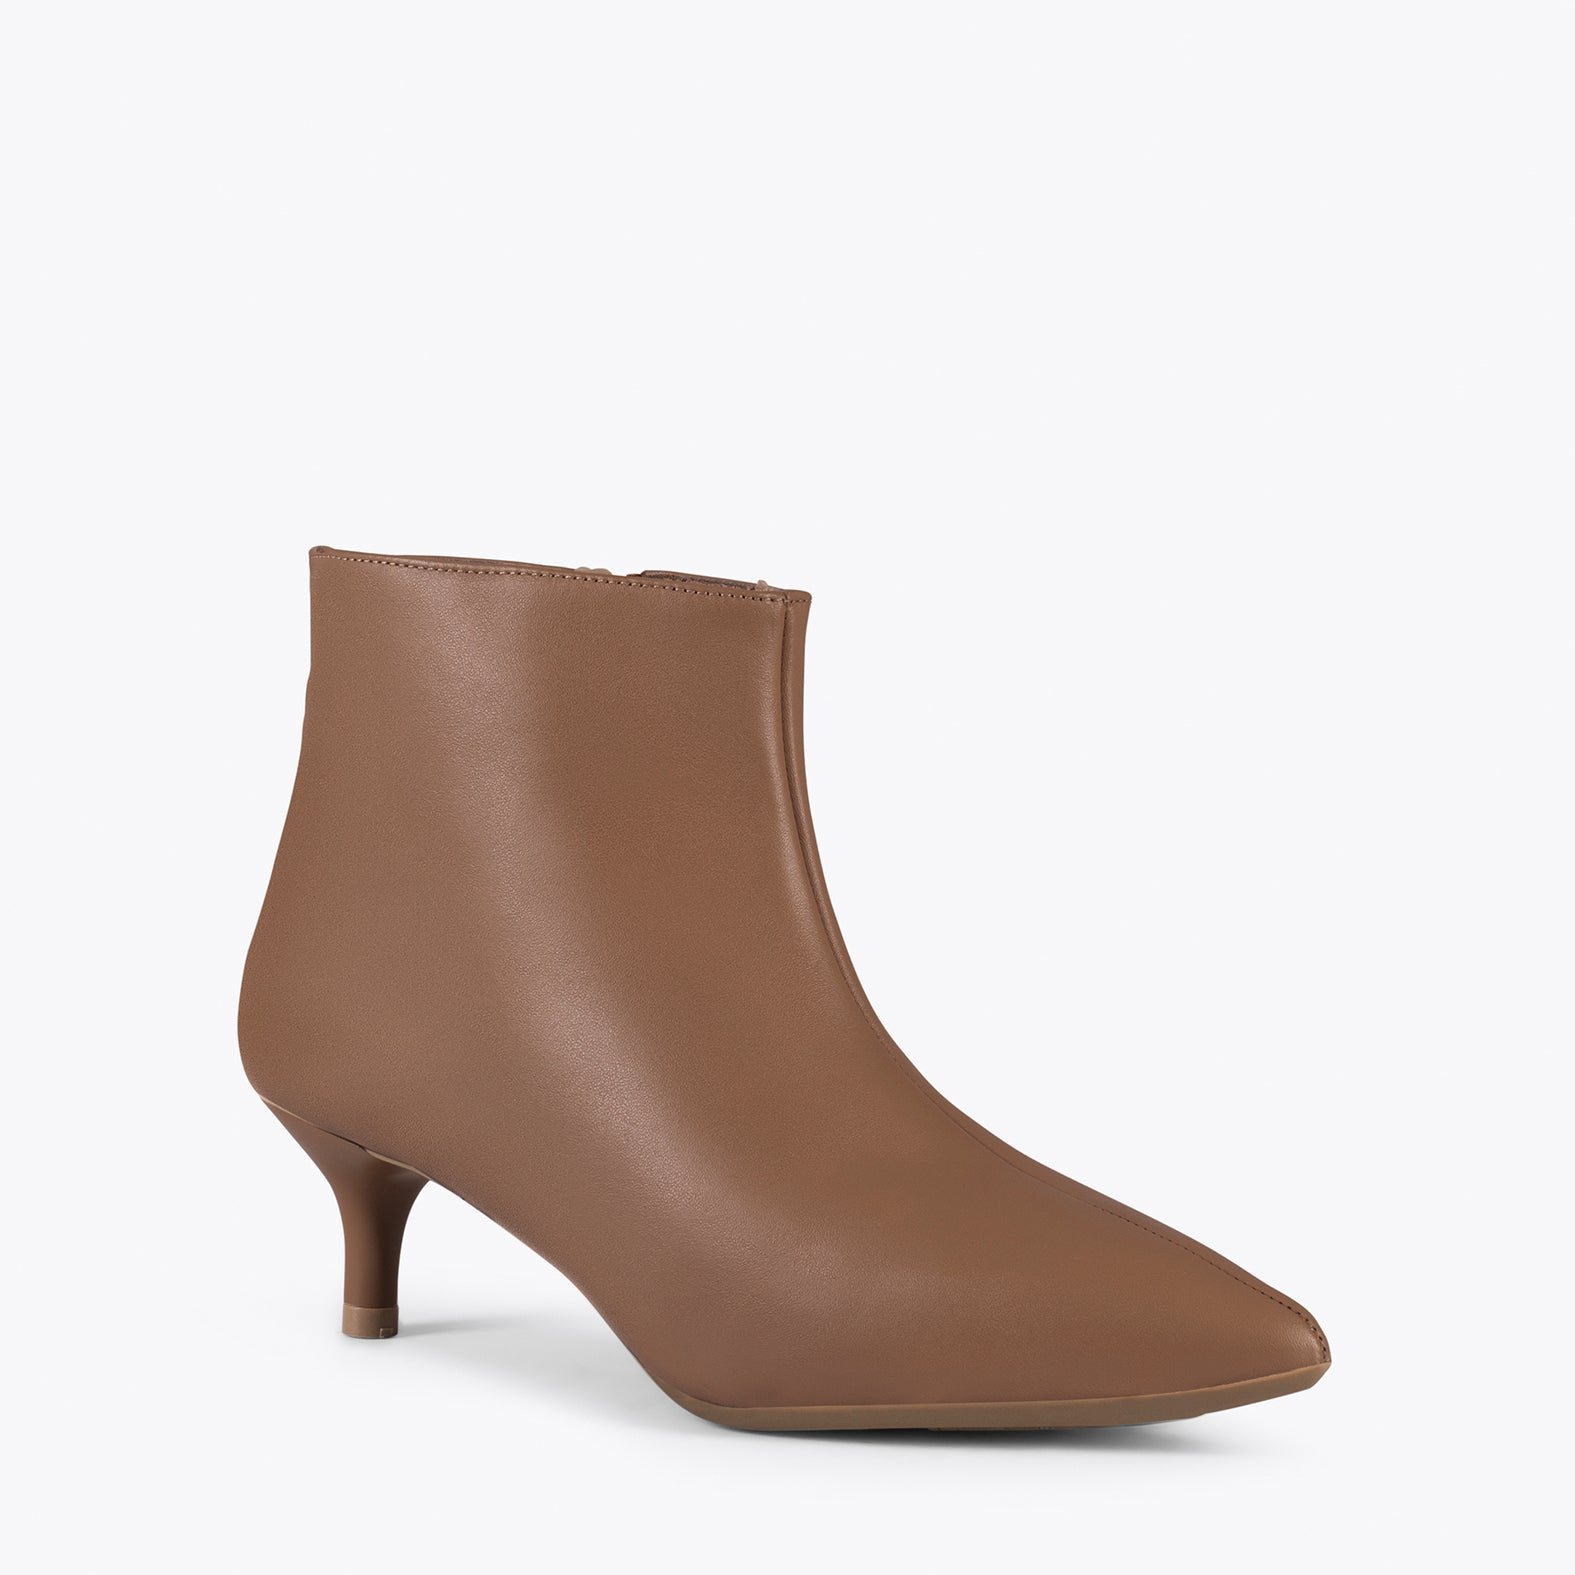 OUTFIT – BROWN elegant low heel booties